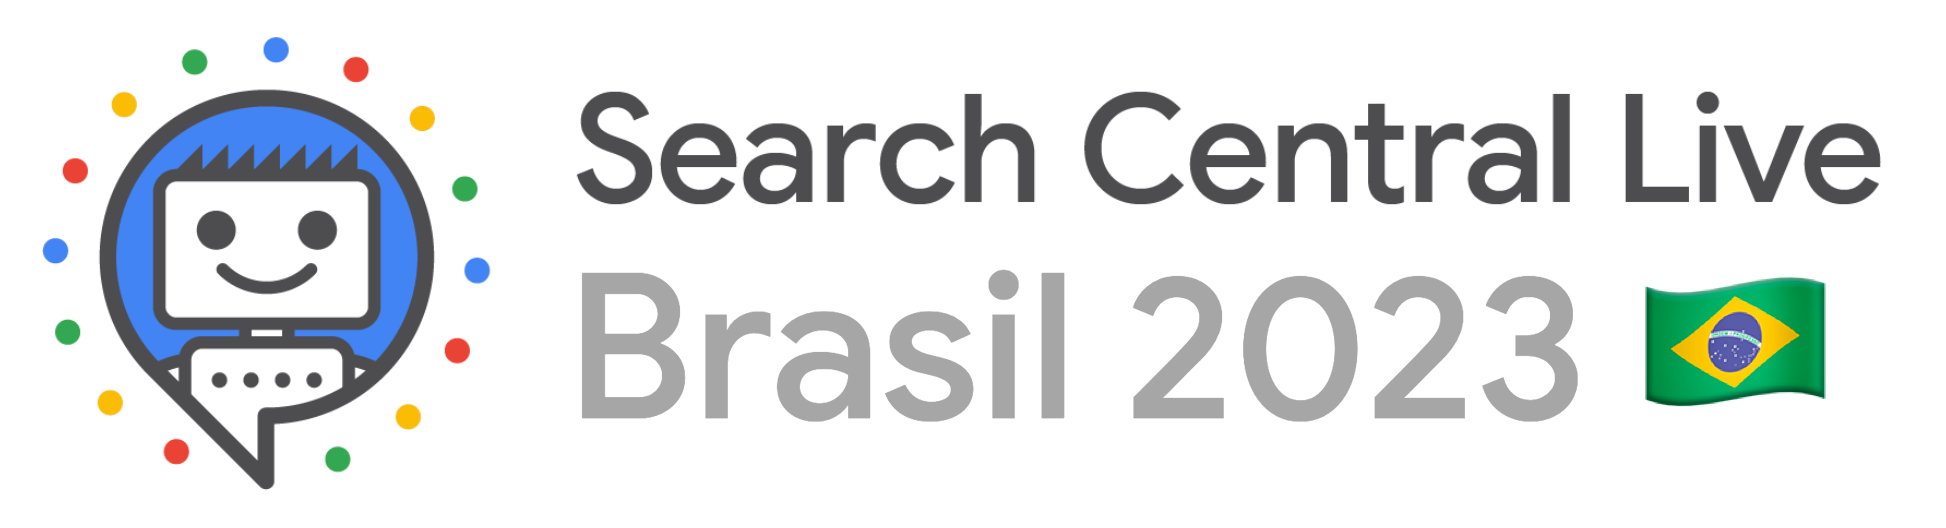 Logomarca do Search Central Live Brasil